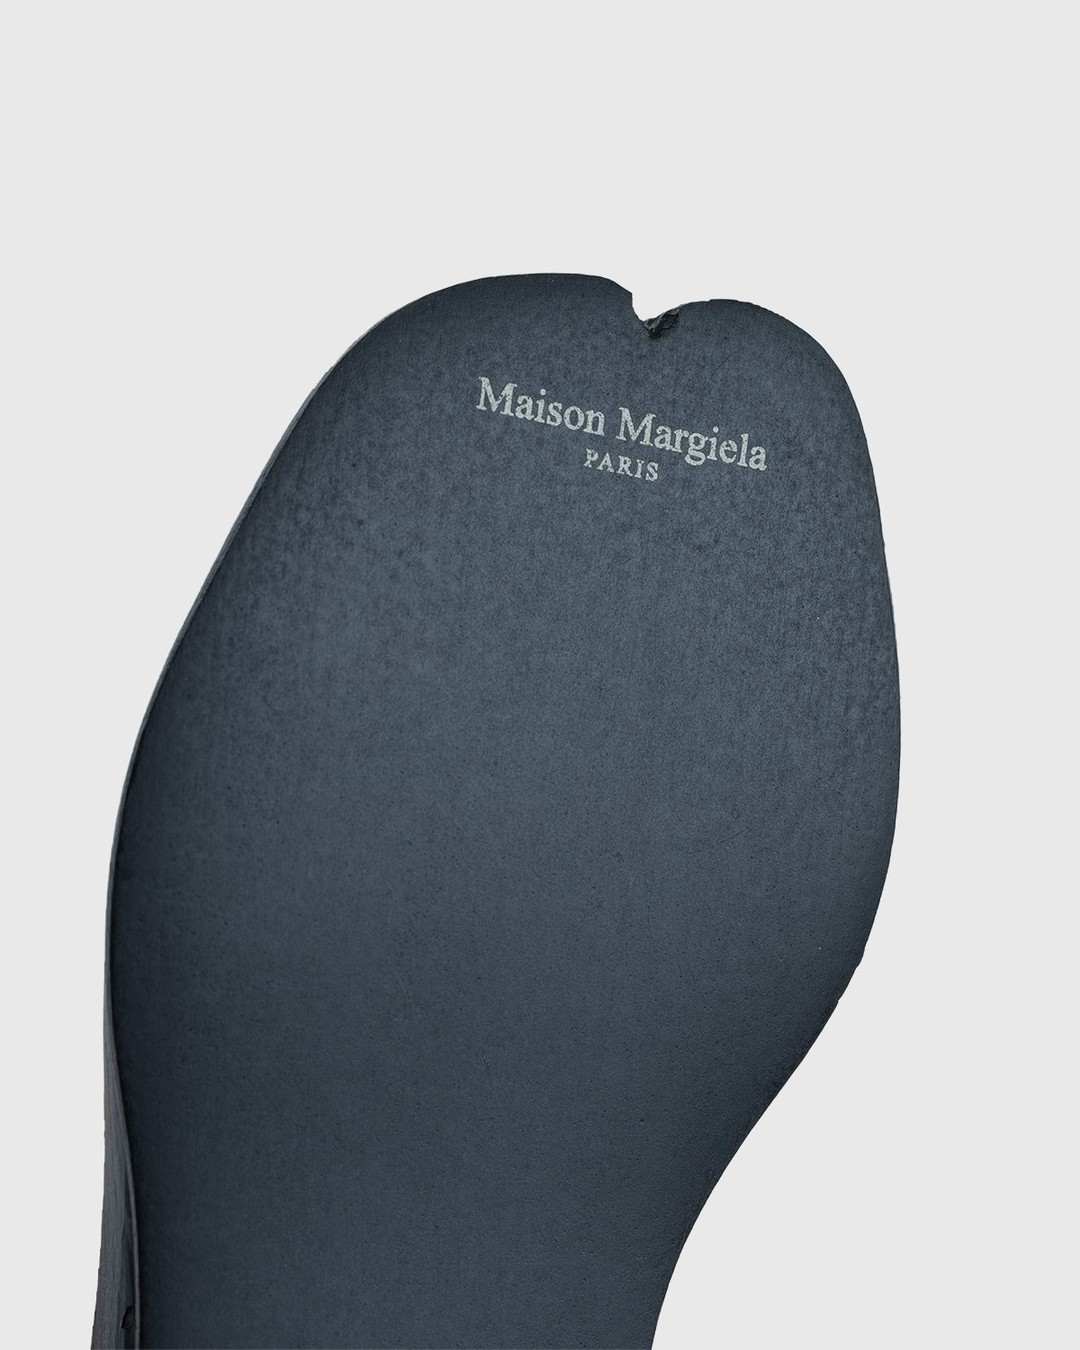 Maison Margiela – Tabi Key Ring Black - Keychains - Black - Image 4